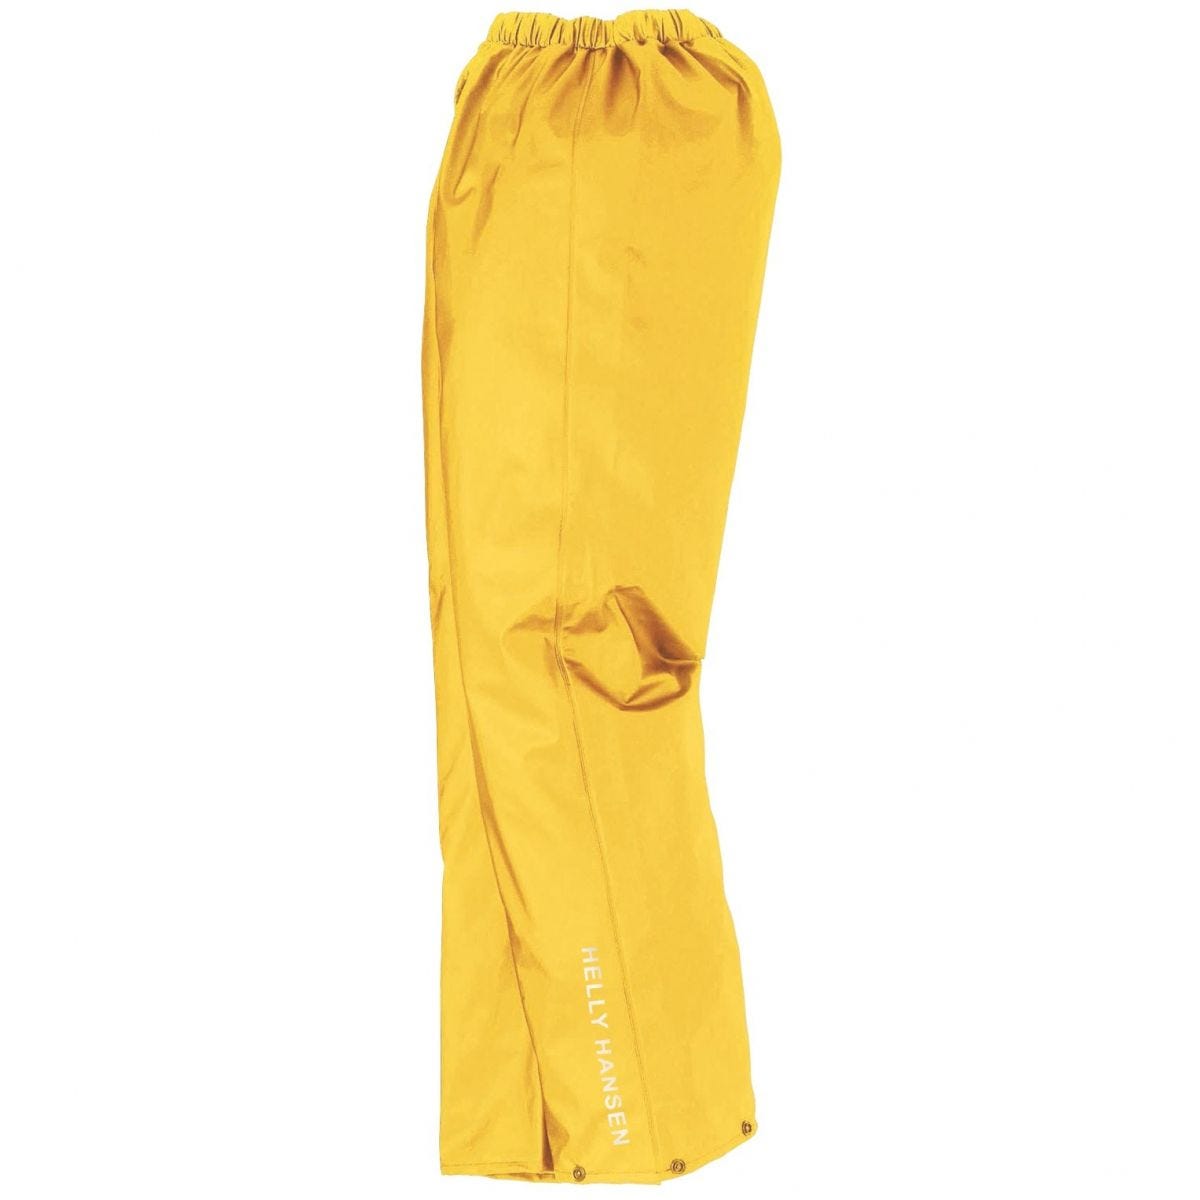 Pantalon de pluie imperméable Voss jaune - Helly Hansen - Taille M 0